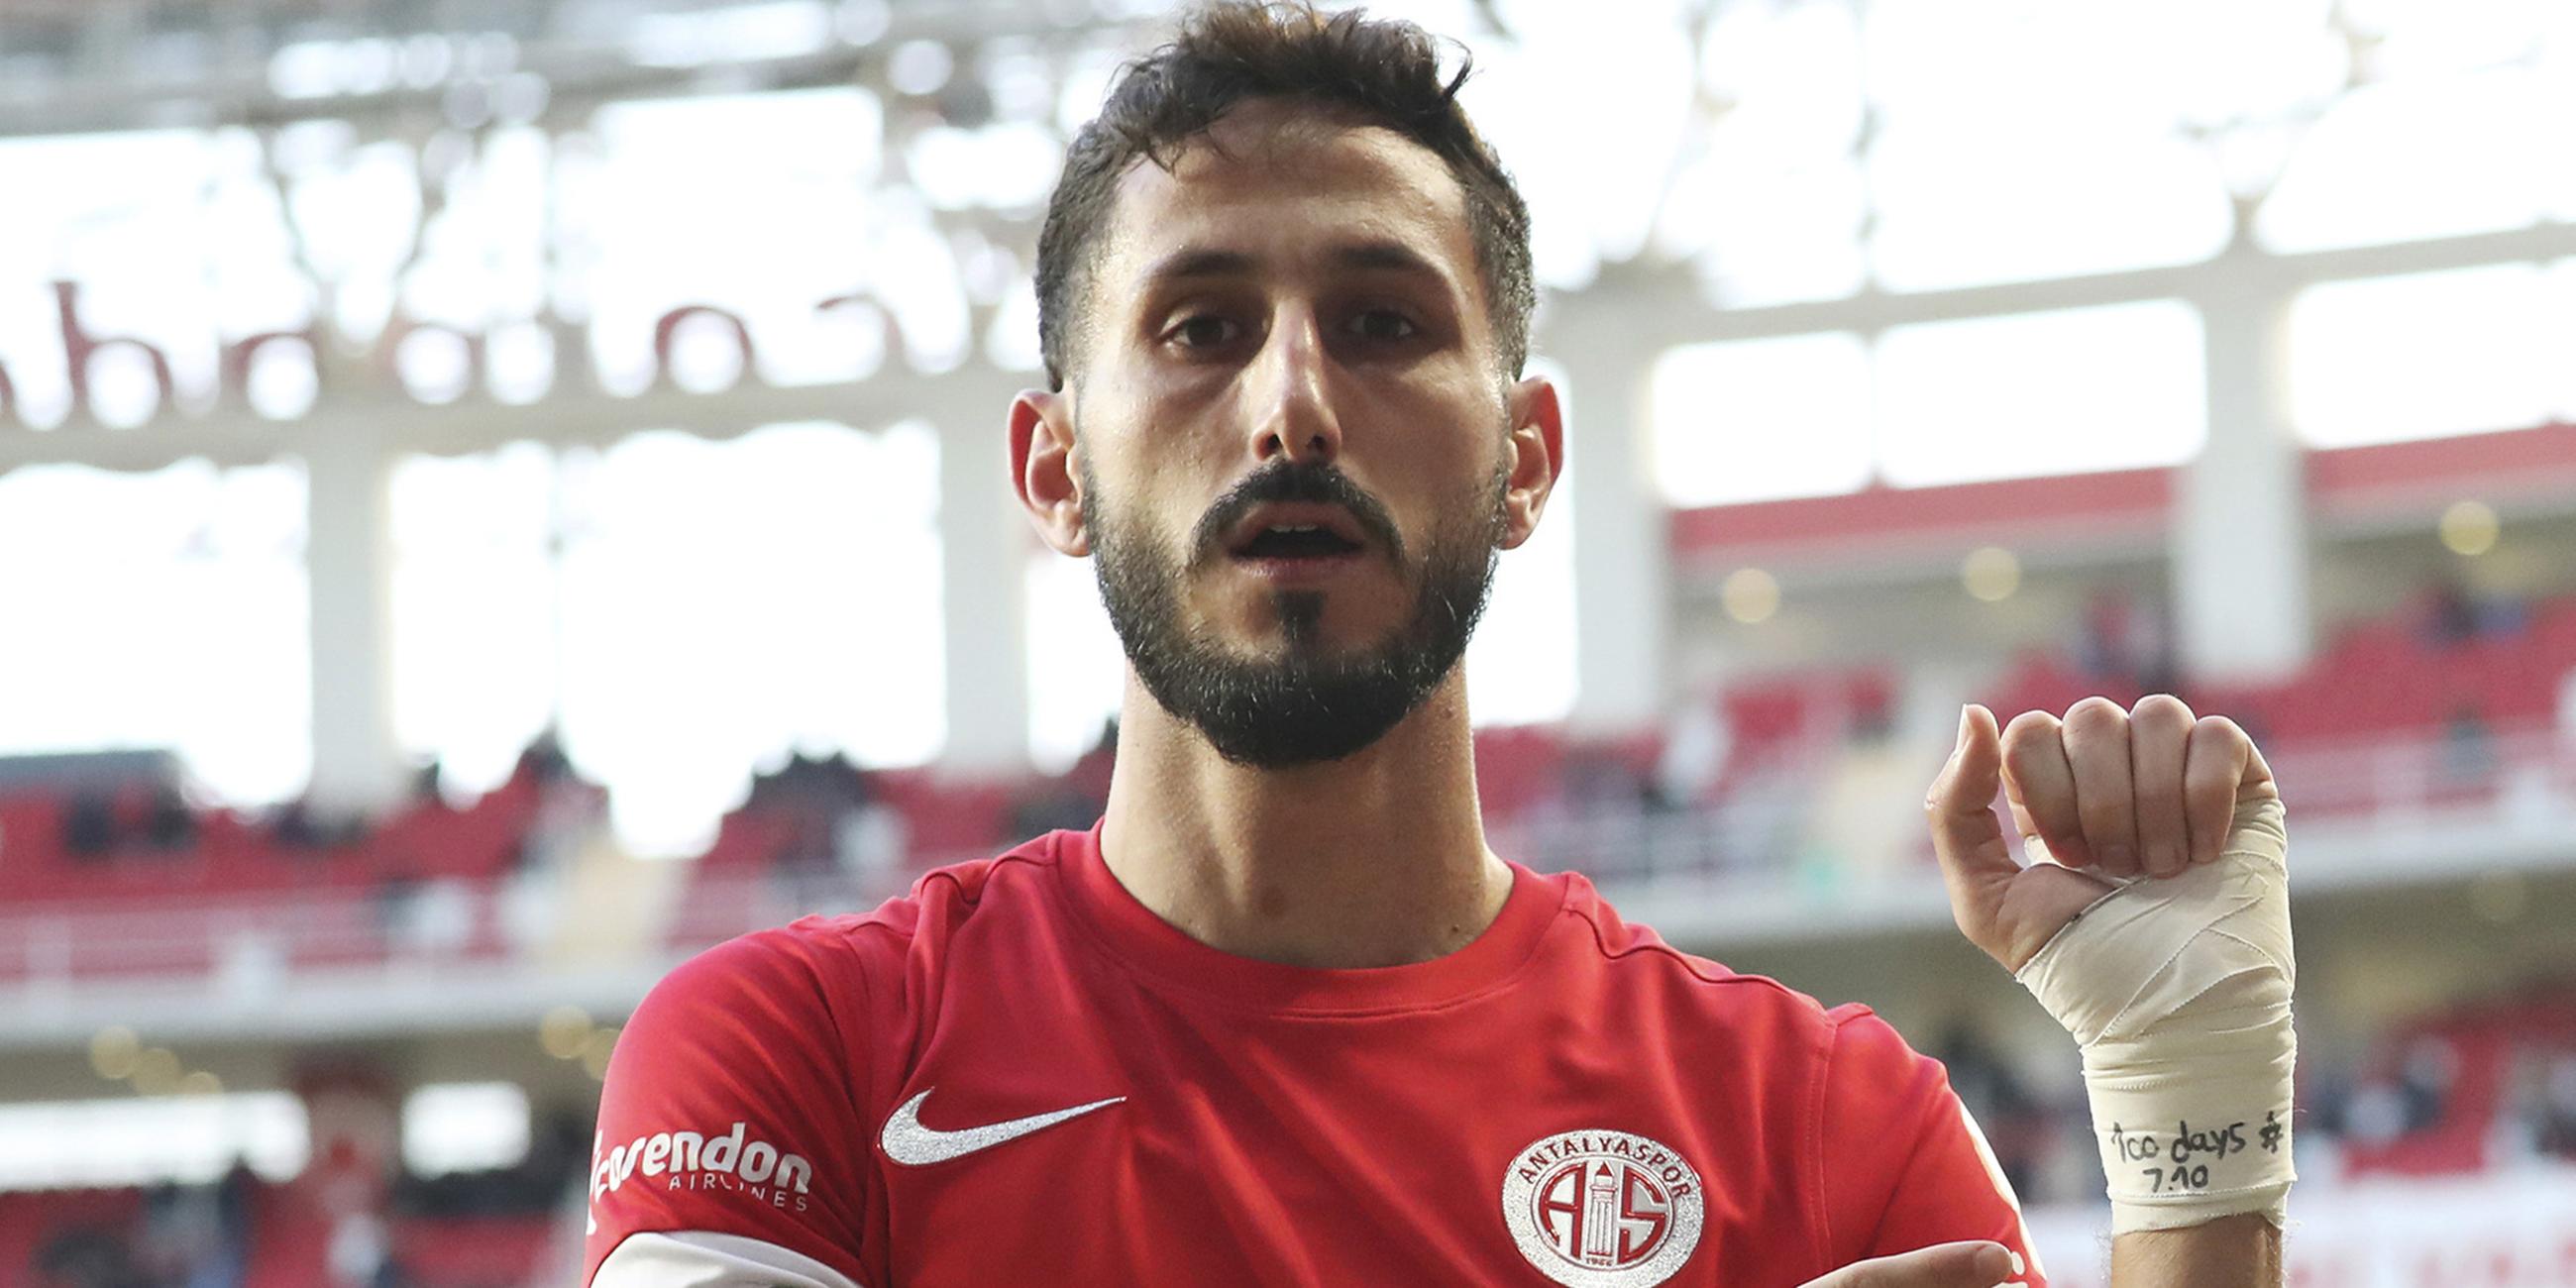 Sagiv Jehezkel von Antalyaspor zeigt nach einem Tor auf seinen bandagierten Arm.